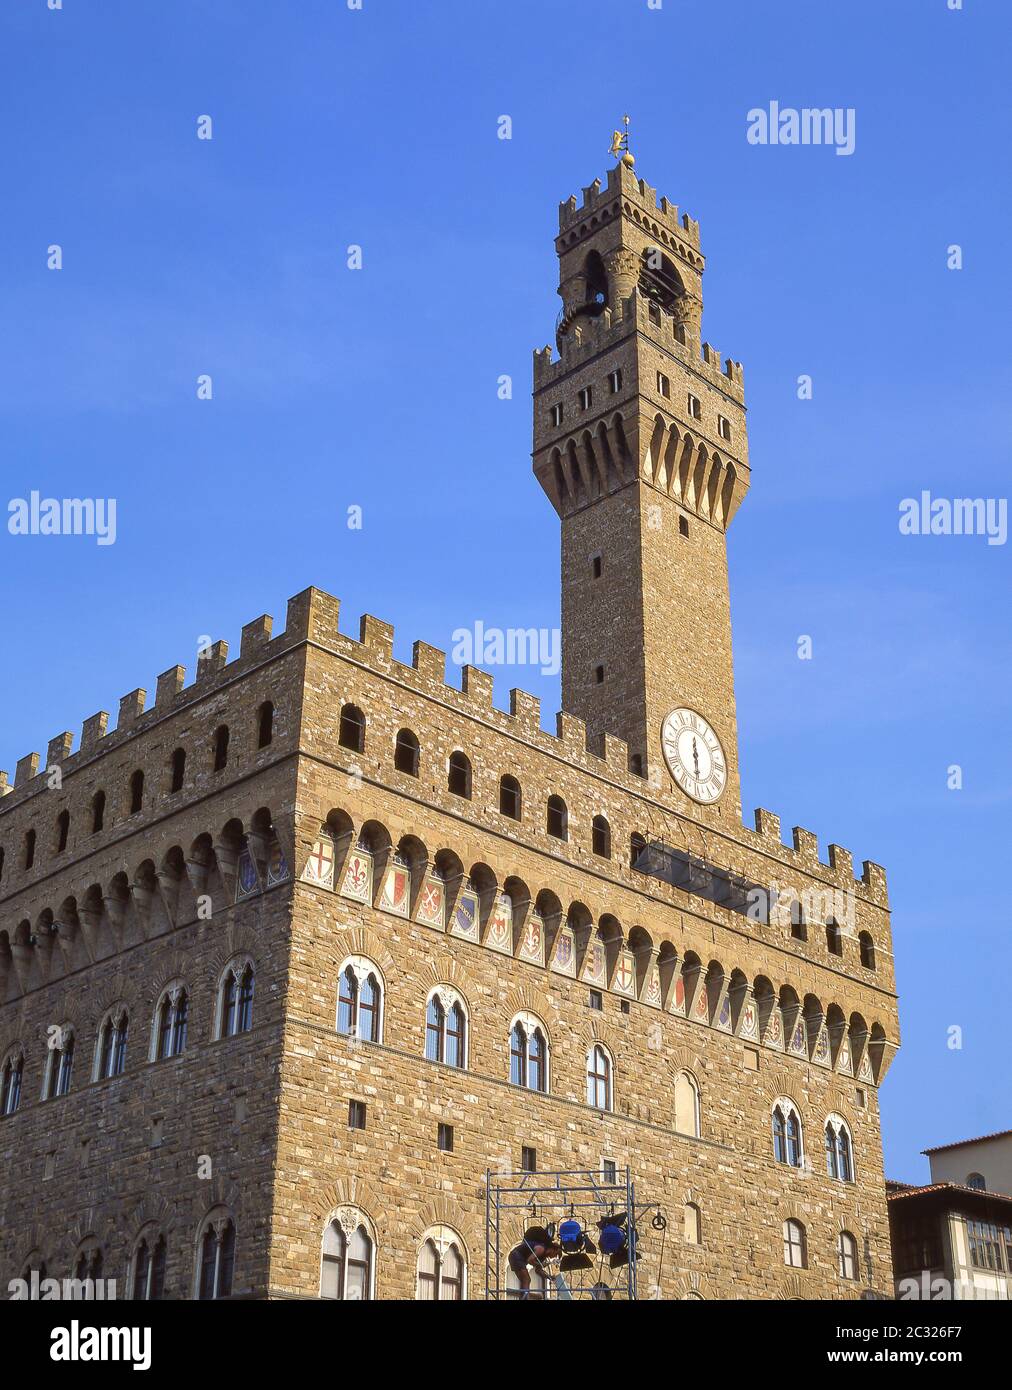 Palazzo Vecchio, Piazza della Signoria, Florence (Firenze), région Toscane, Italie Banque D'Images